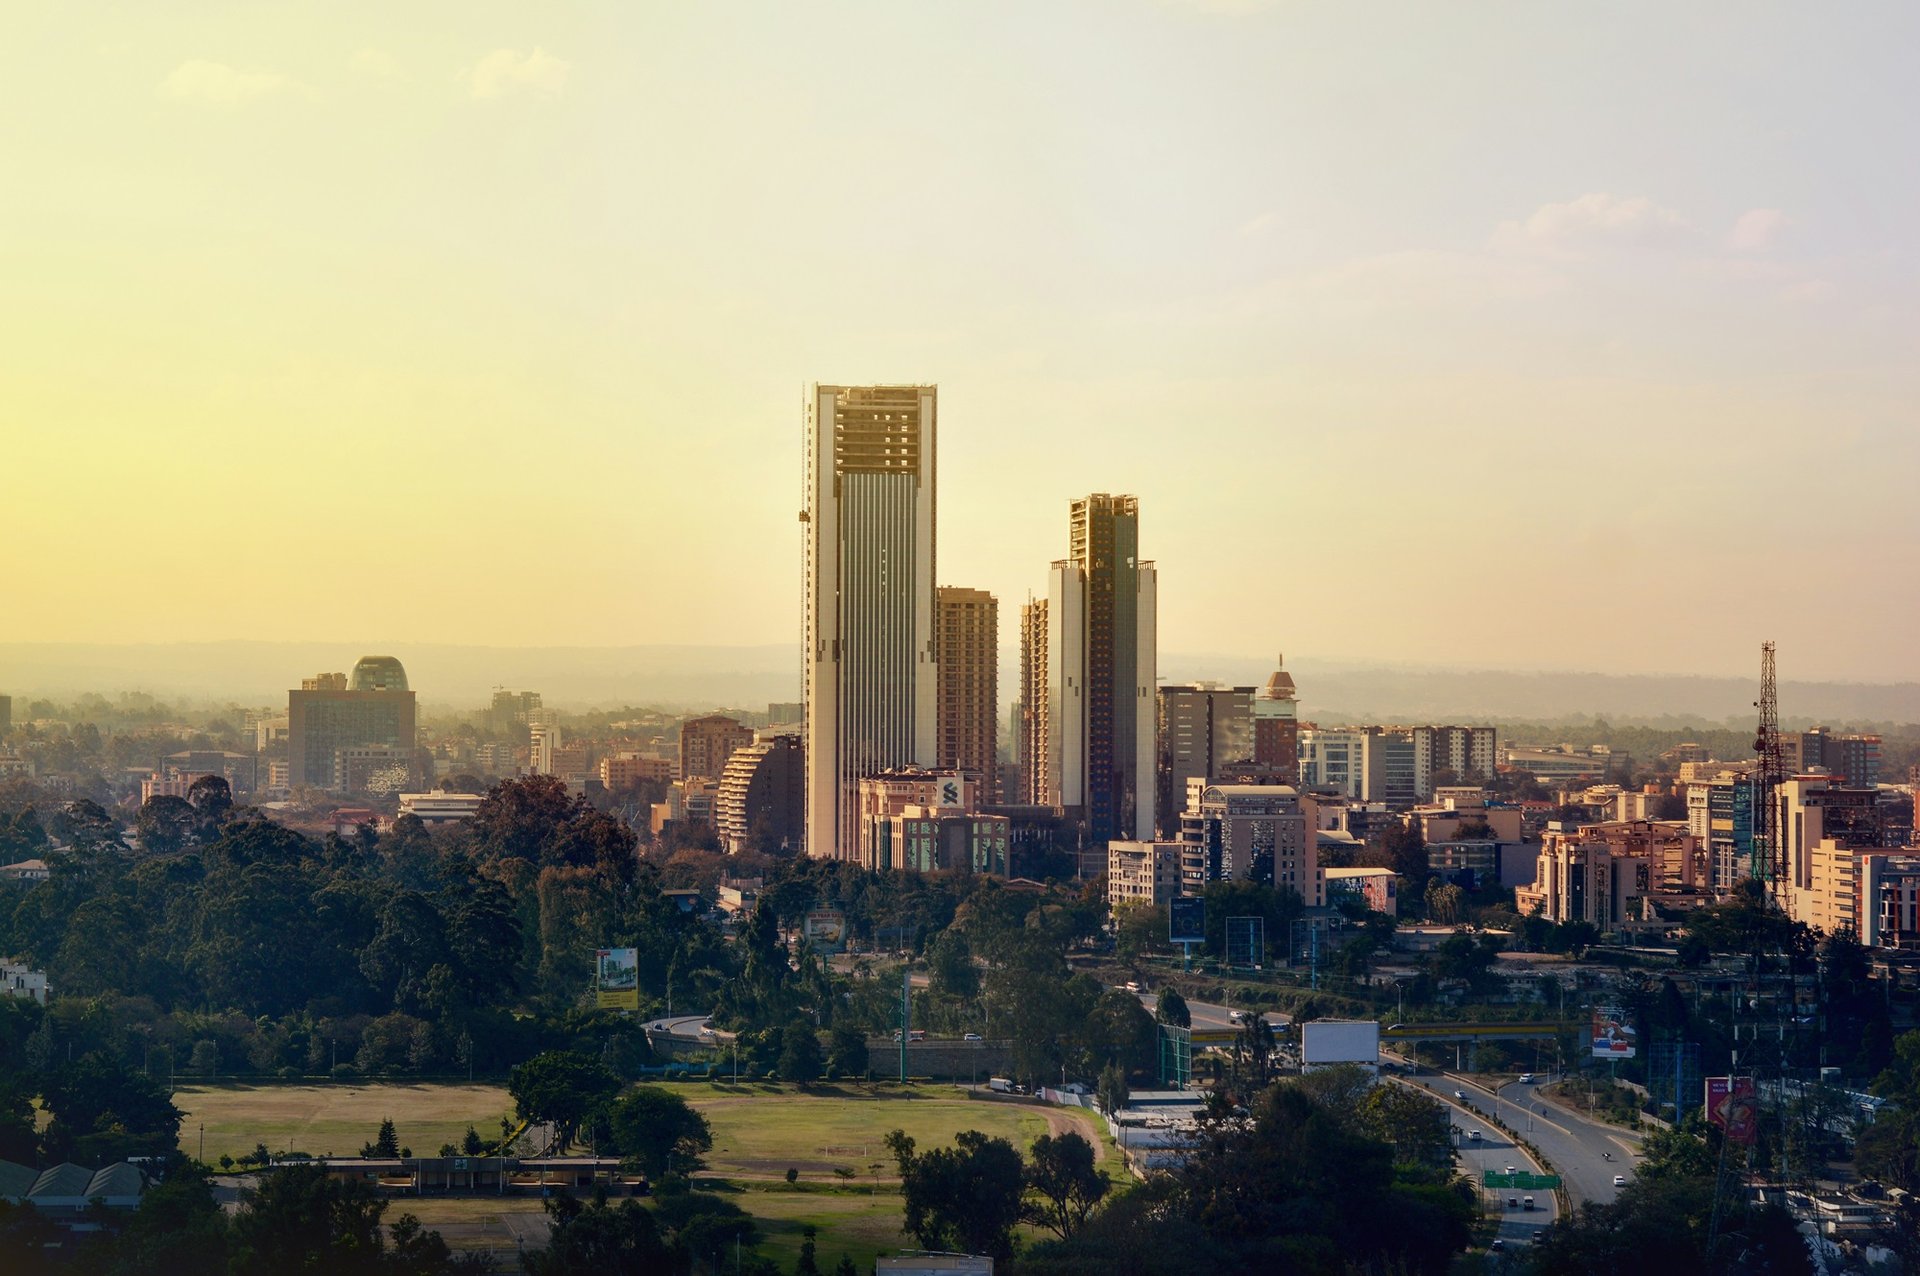 La ville de Nairobi, Kenya